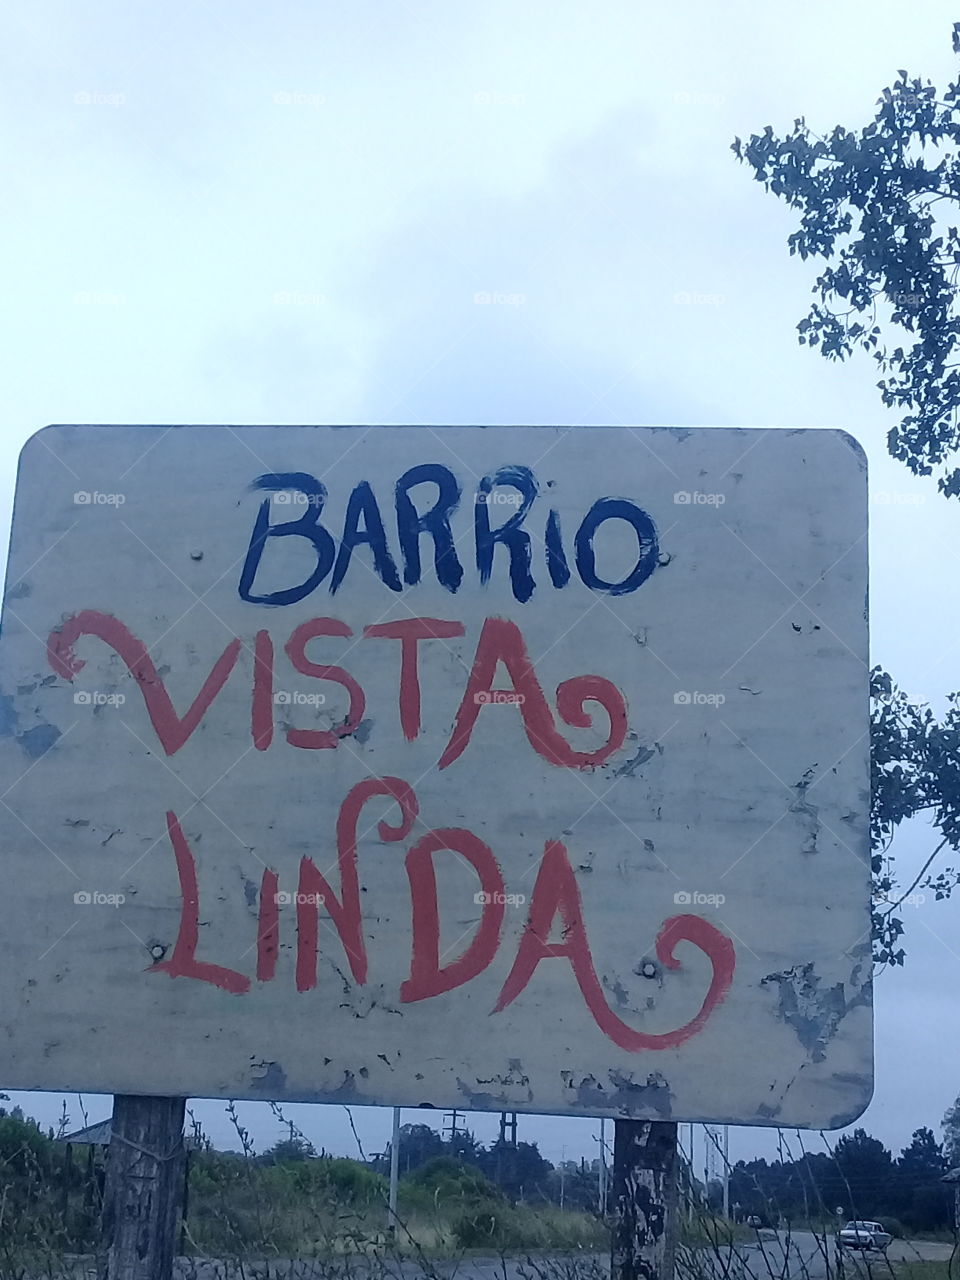 cartel indicador de la entrada a un barrio rural de General Rodríguez,provincia de Buenos Aires. Argentina